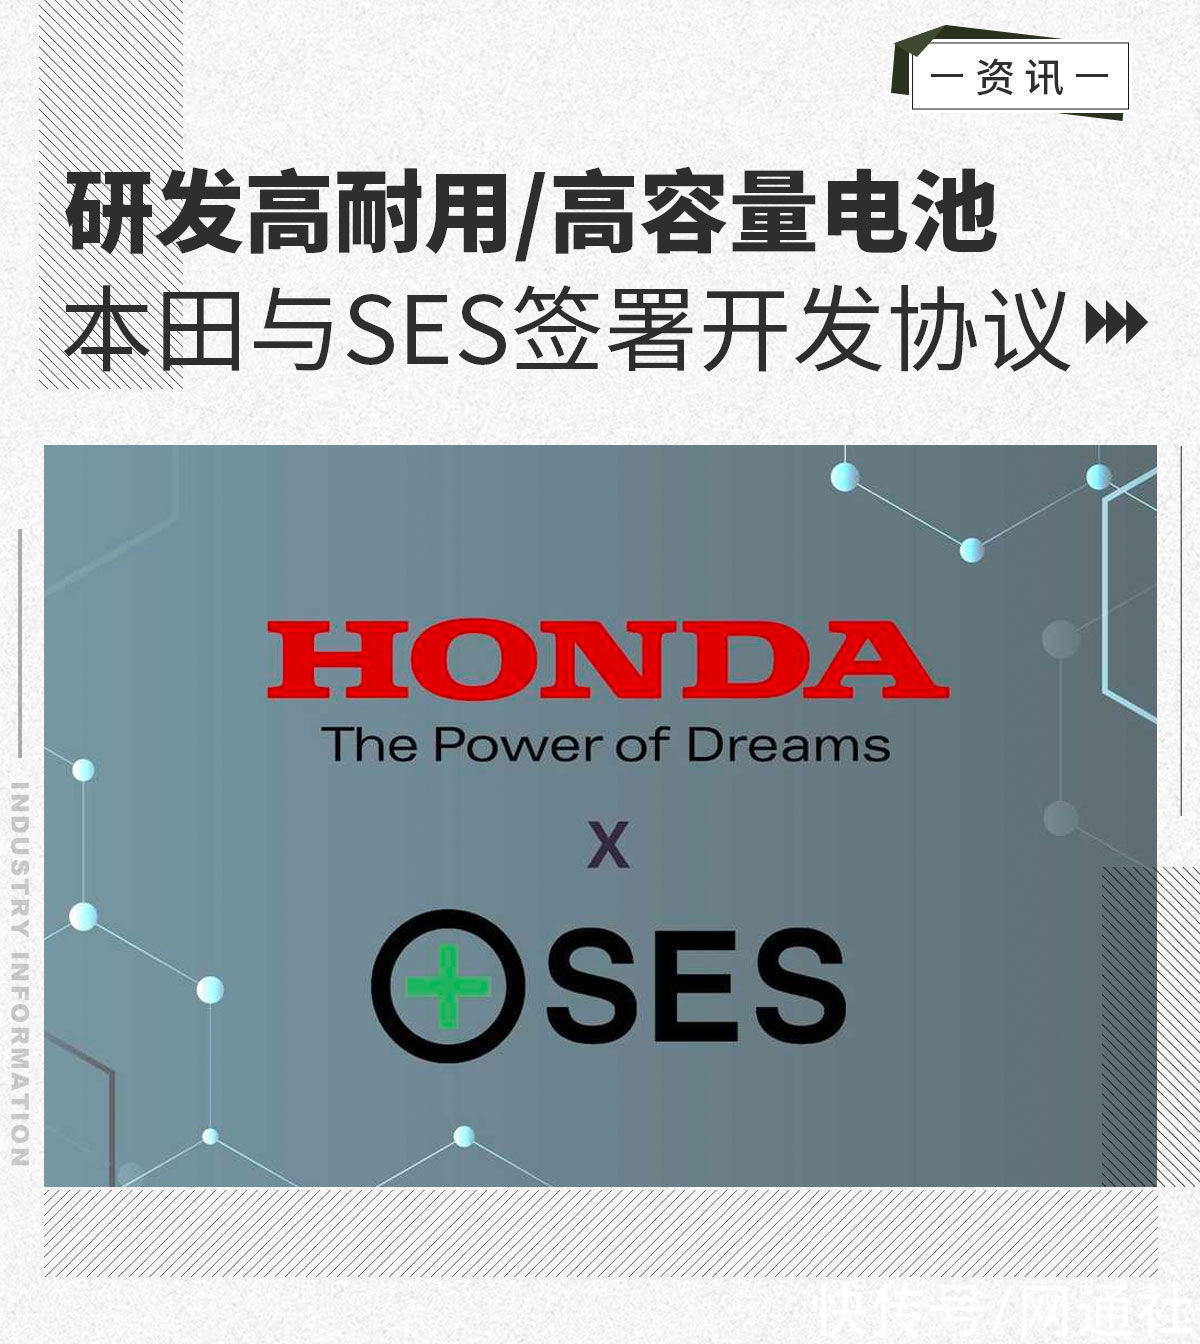 ses|研发高耐用/高容量电池 本田与SES签署开发协议